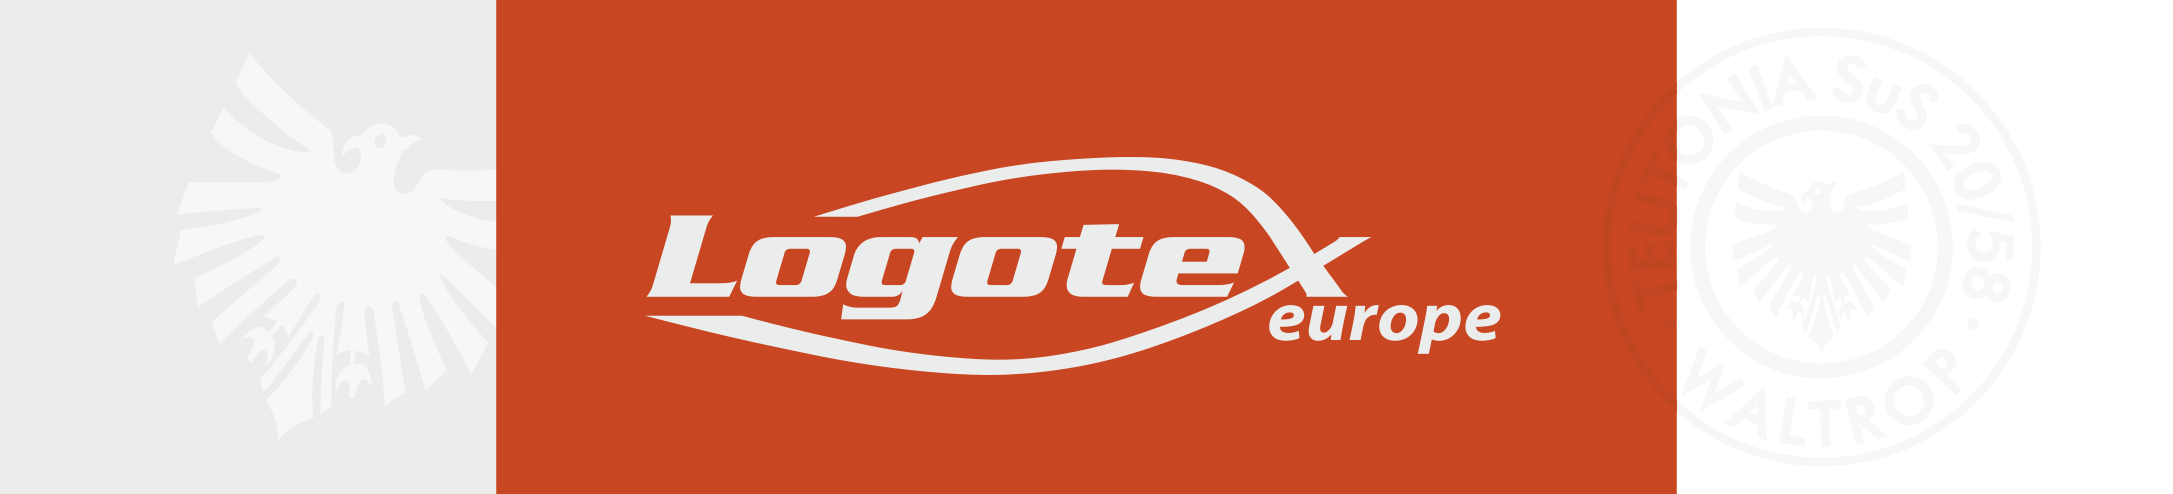 Logo von Logotex Europe